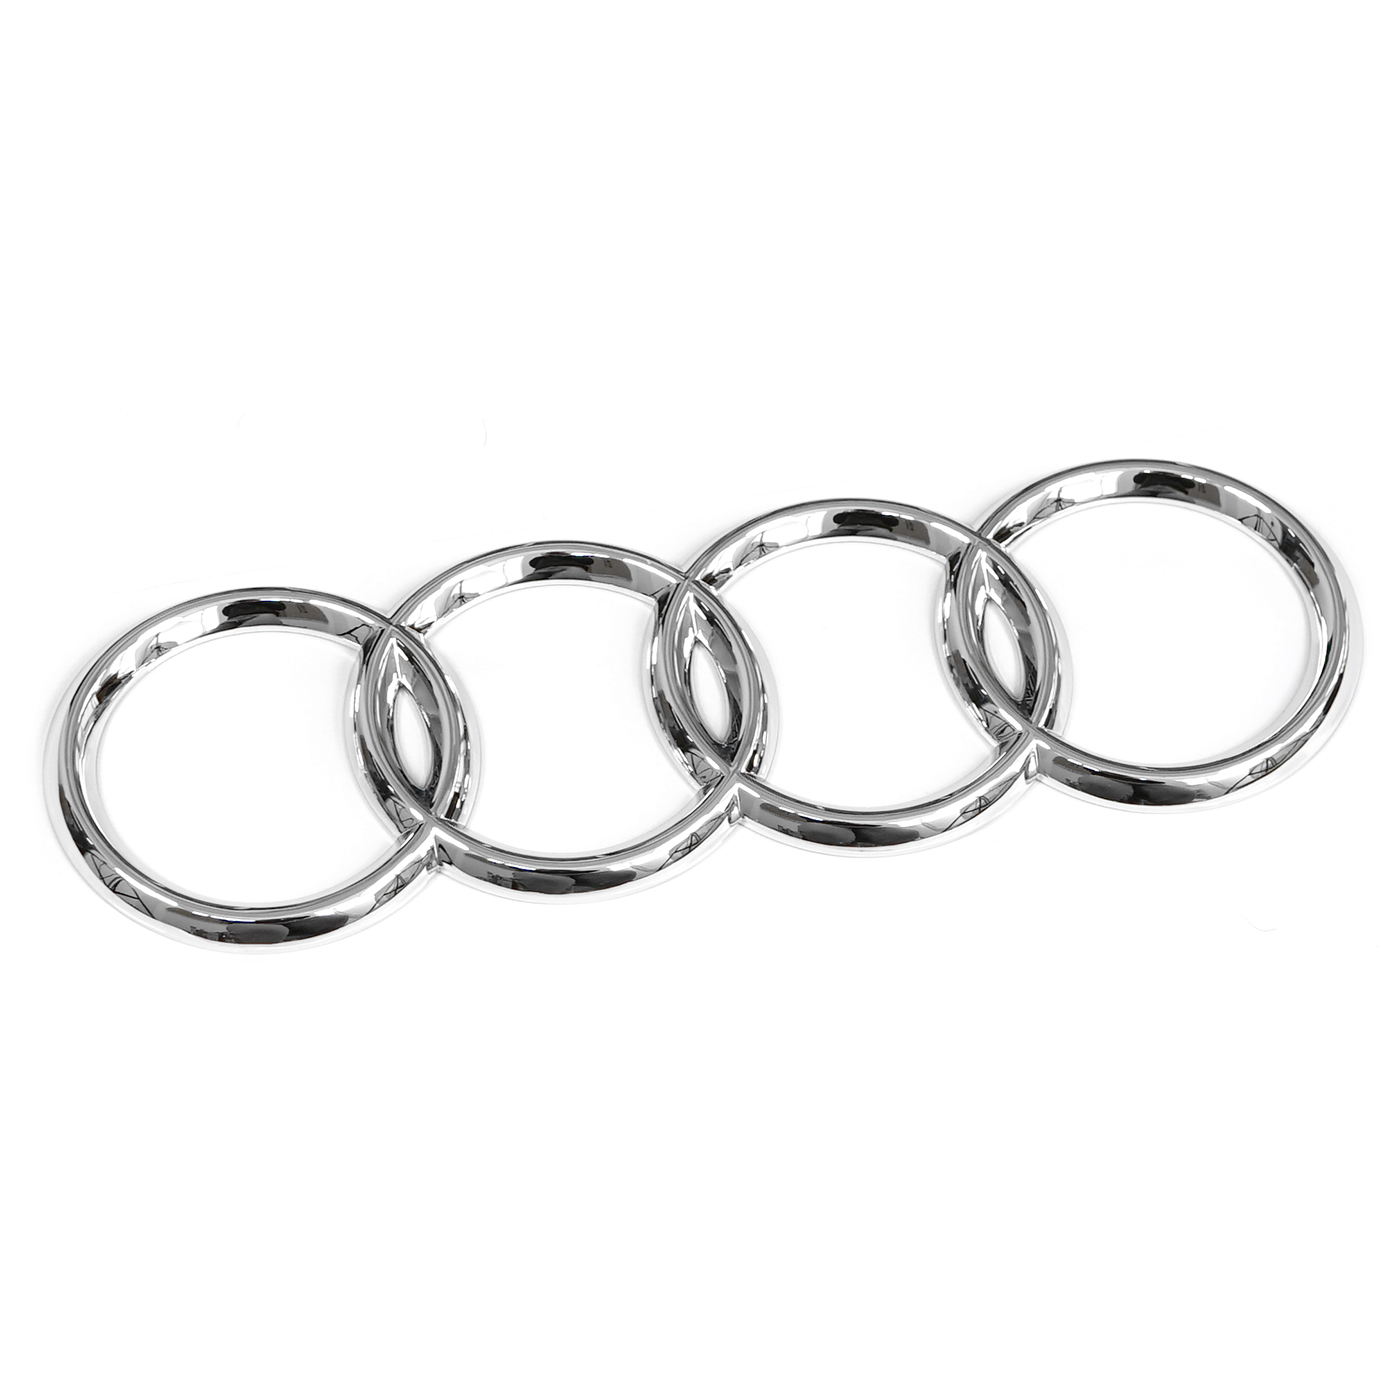 Audi Emblem / Ringe schwarz glänzend für Gepäckraumklappe (A4 B9